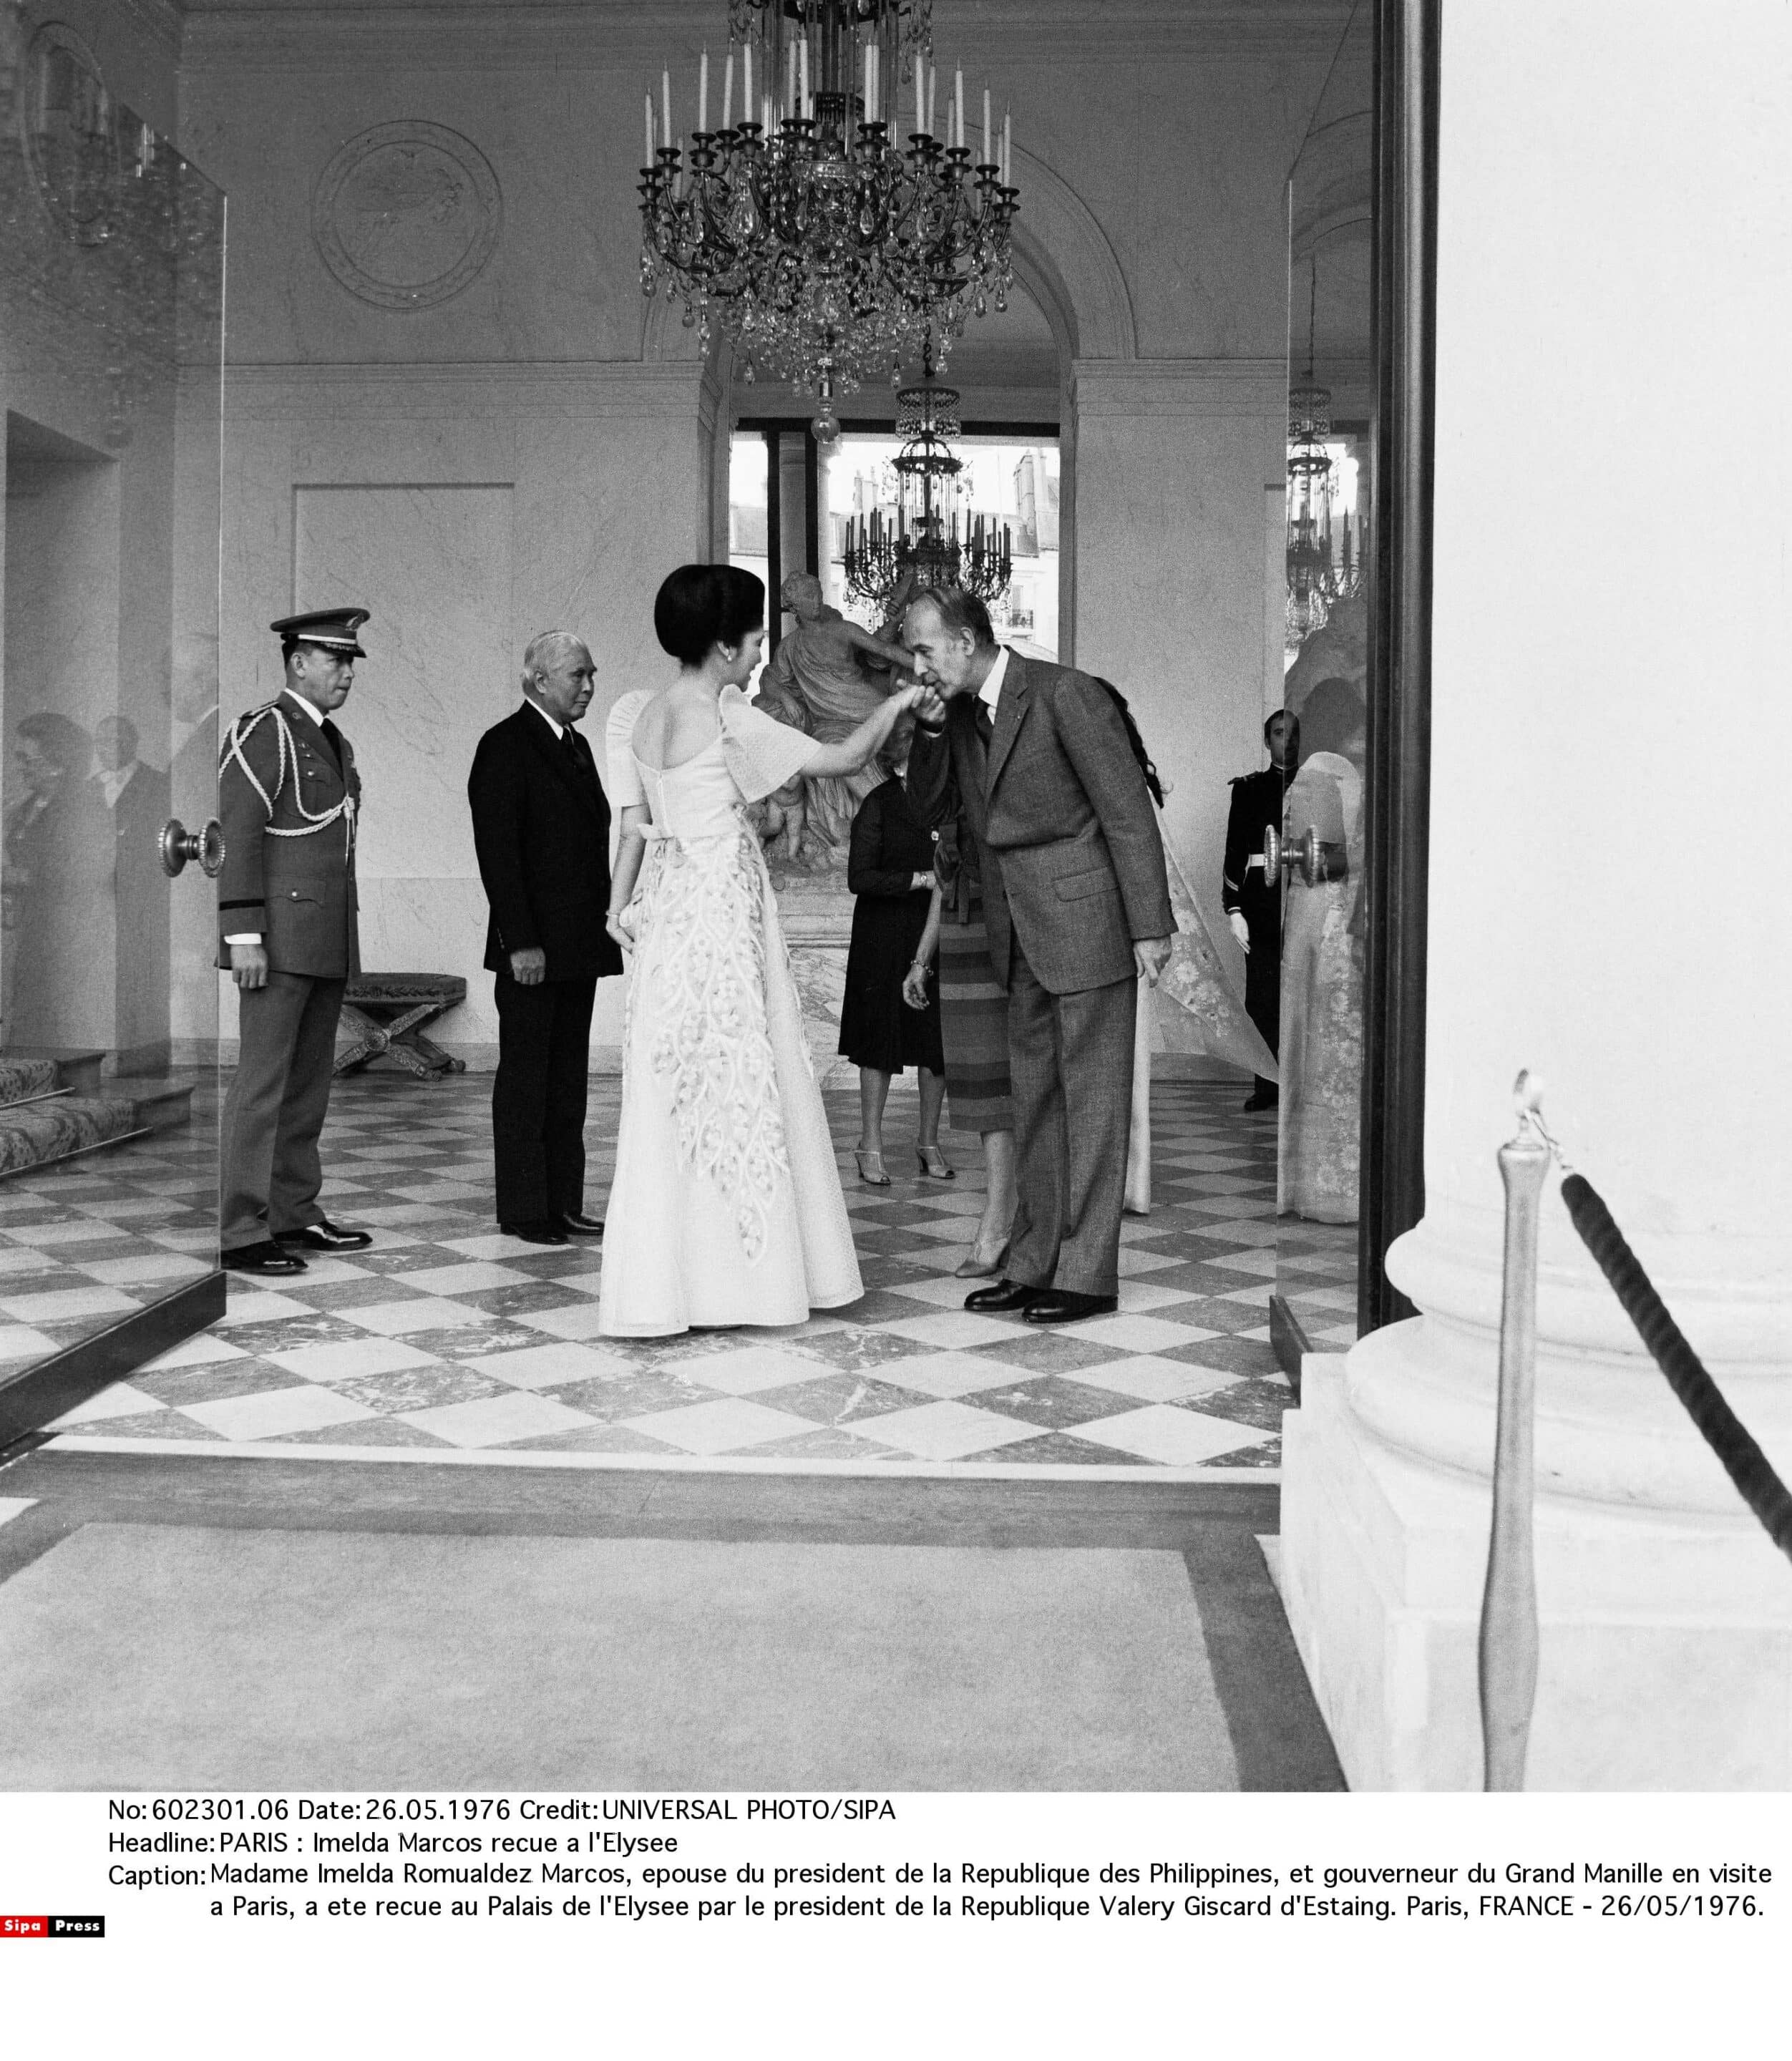 Madame Imelda Romualdez Marcos, epouse du president de la Republique des Philippines, et gouverneur du Grand Manille en visite a Paris, a ete recue au Palais de l'Elysee par le president de la Republique Valery Giscard d'Estaing. Paris, FRANCE - 26/05/1976. (C) Sipa